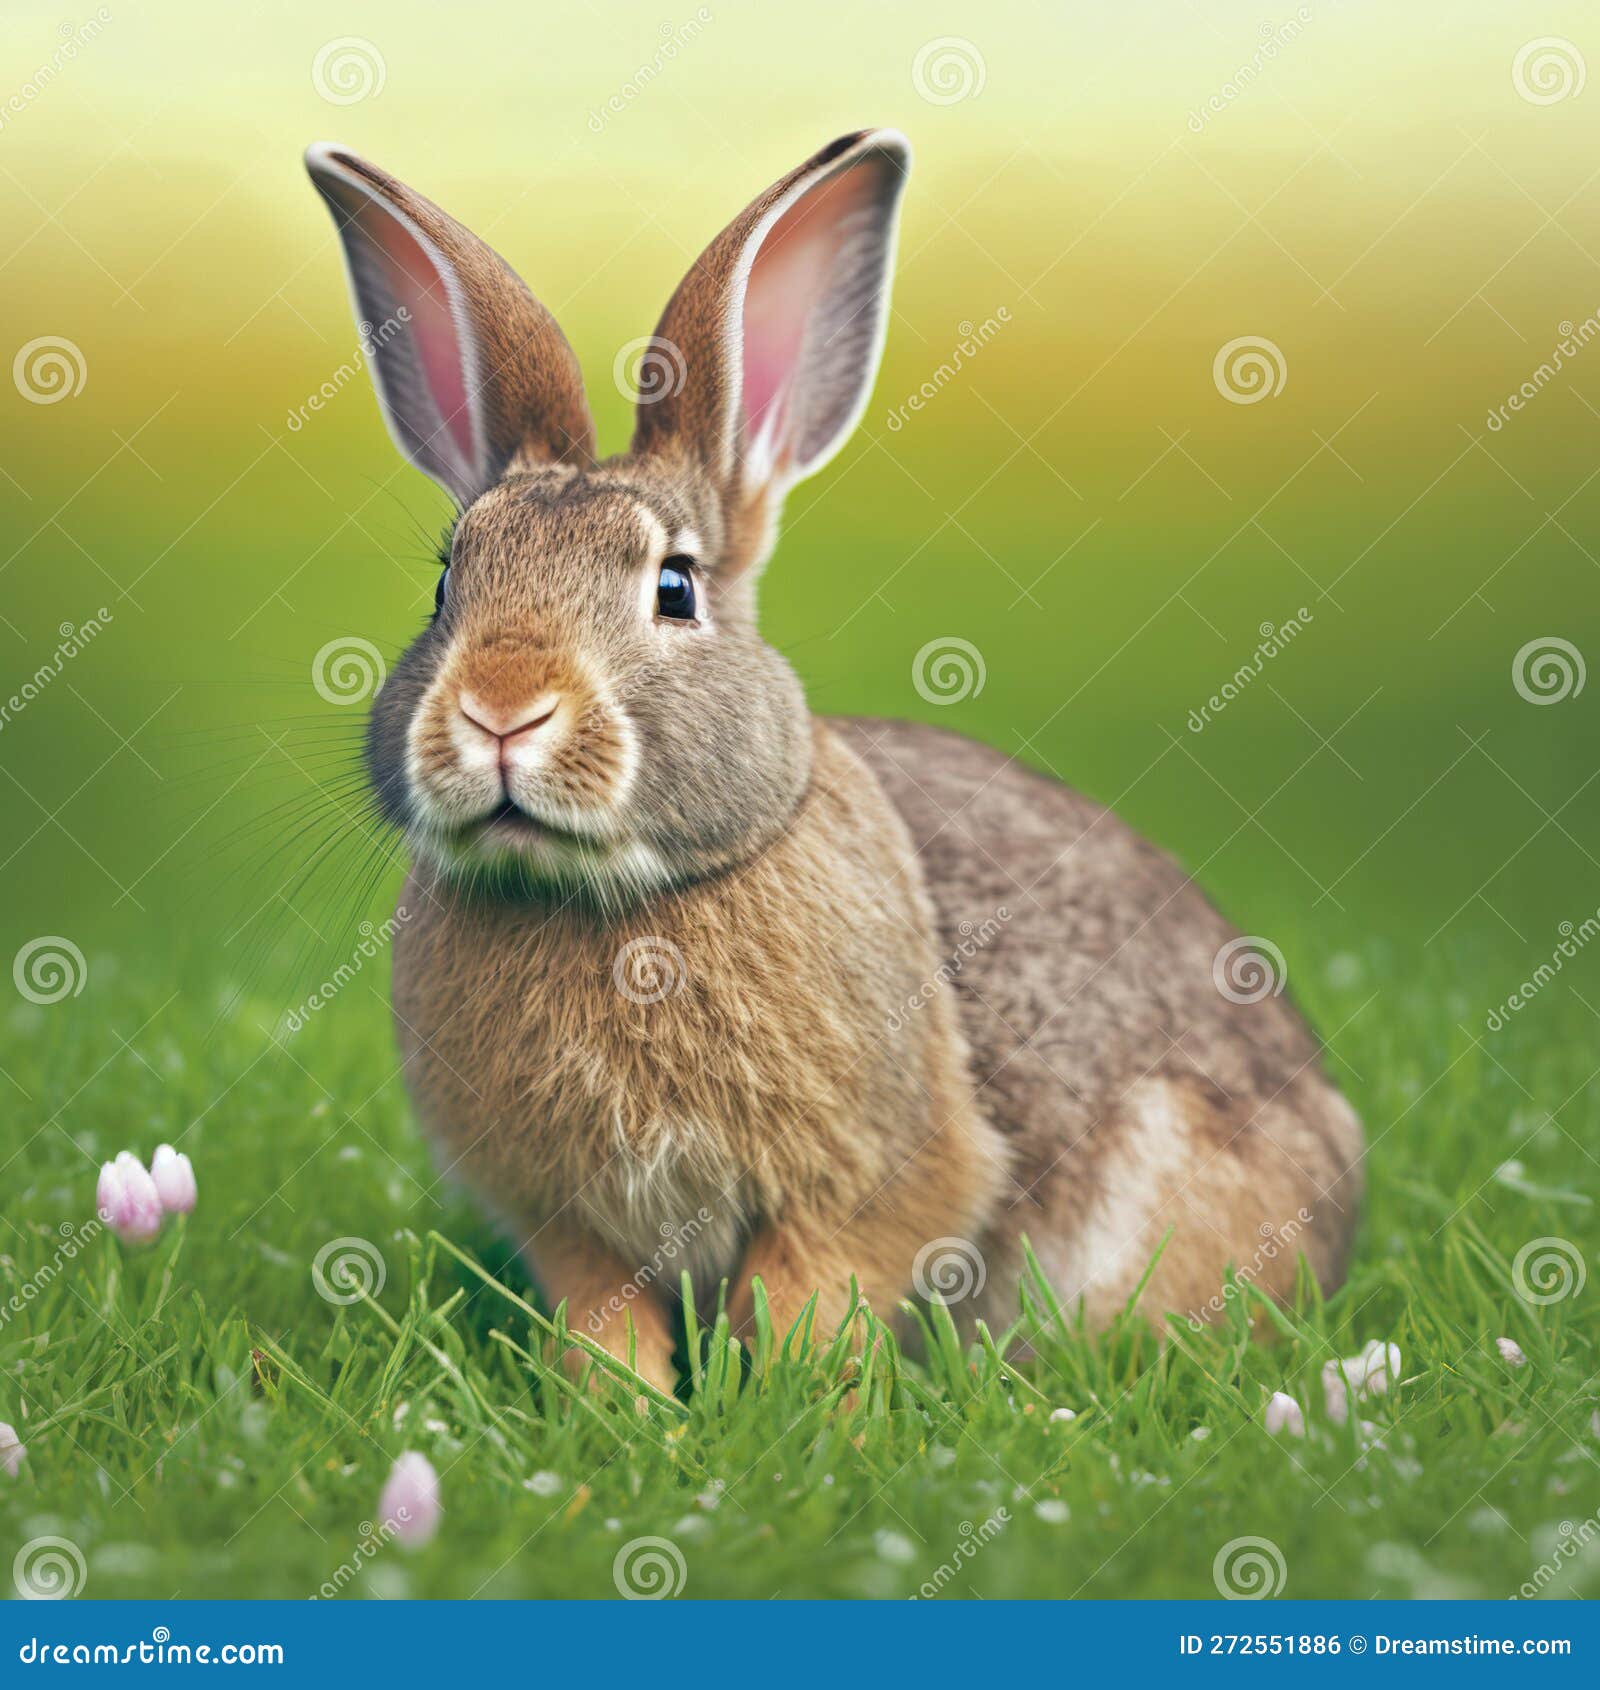 sedate easter rhinelander rabbit portrait full body sitting in green field